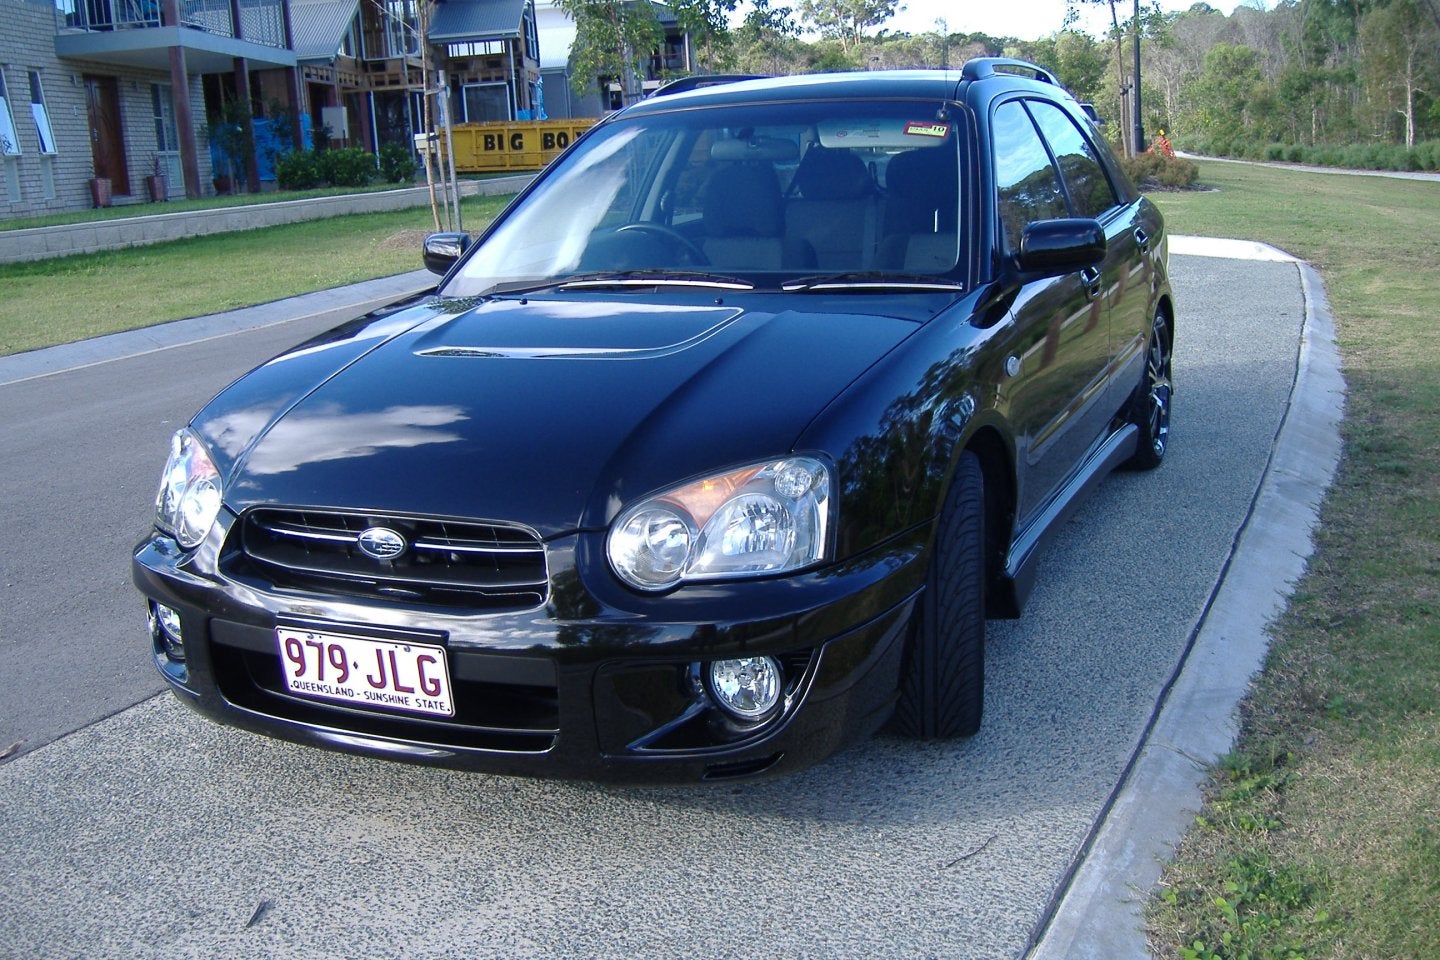 2004 Subaru Impreza Exterior Pictures CarGurus